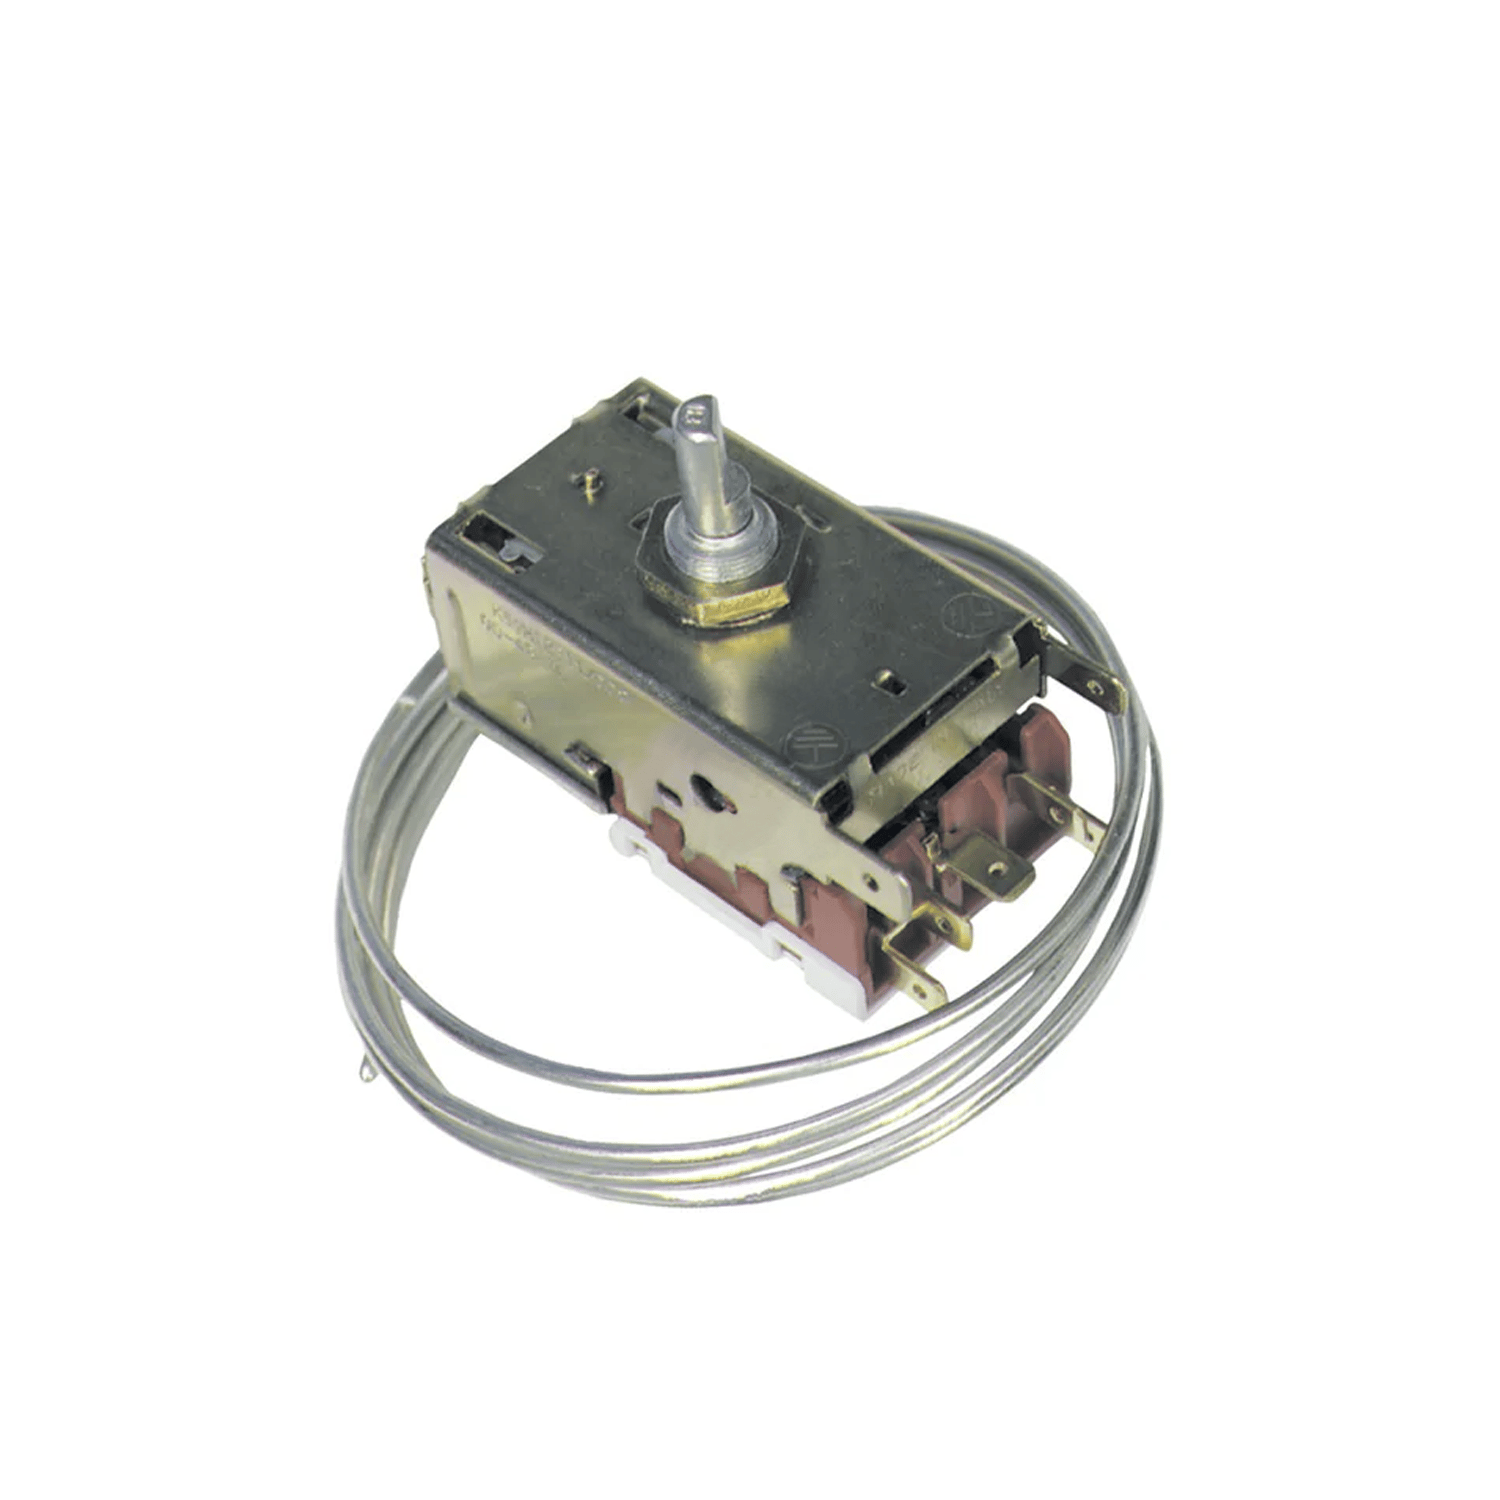 Thermostat Danfoss 077B6439 (EN60730) pour réfrigérateur AEG ELECTROLUX, L 960mm